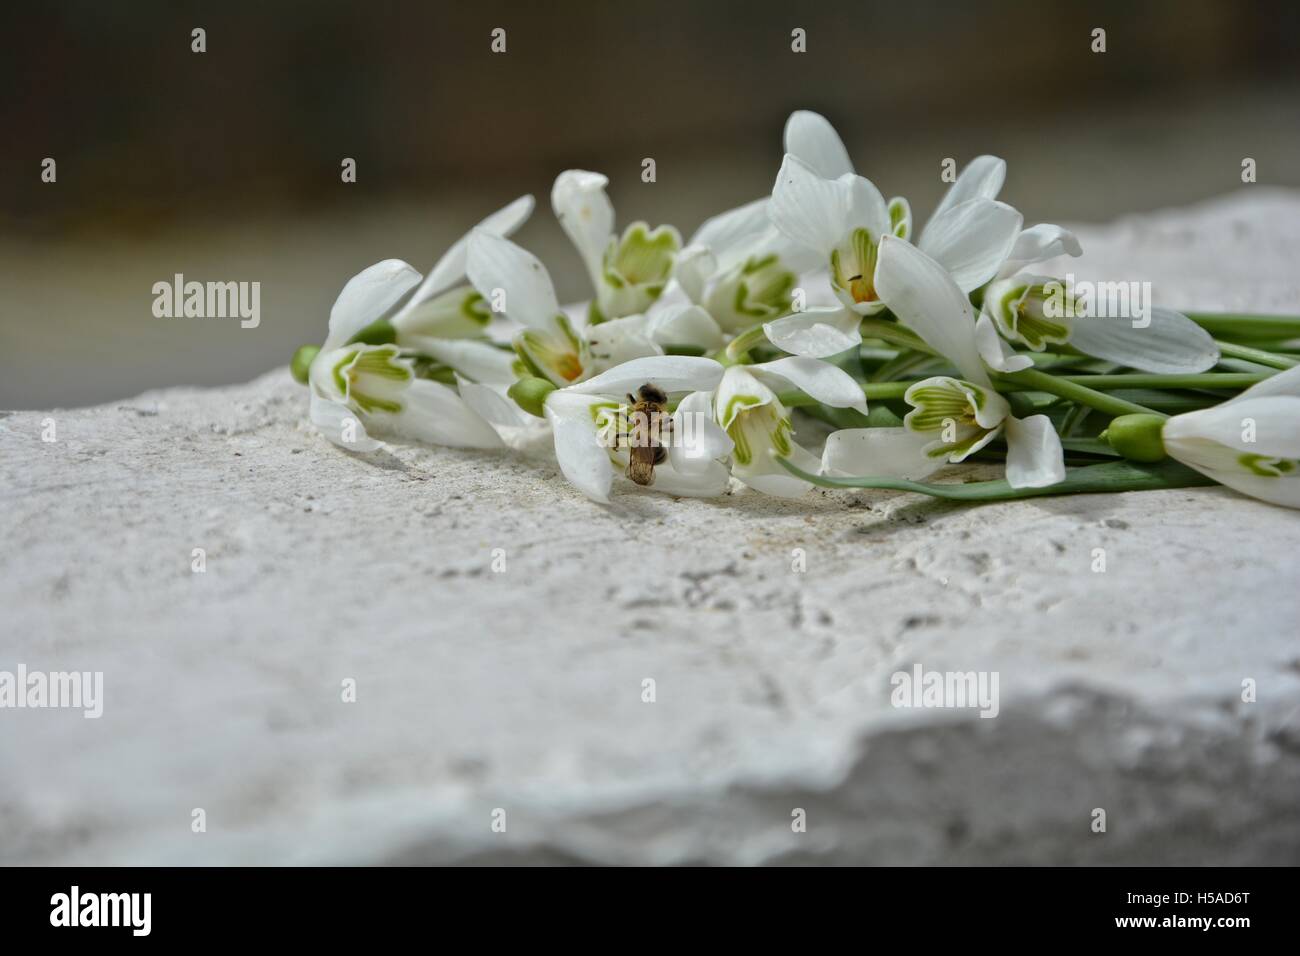 Alcuni snowdrops sul muro bianco con gli insetti in fiore Foto Stock